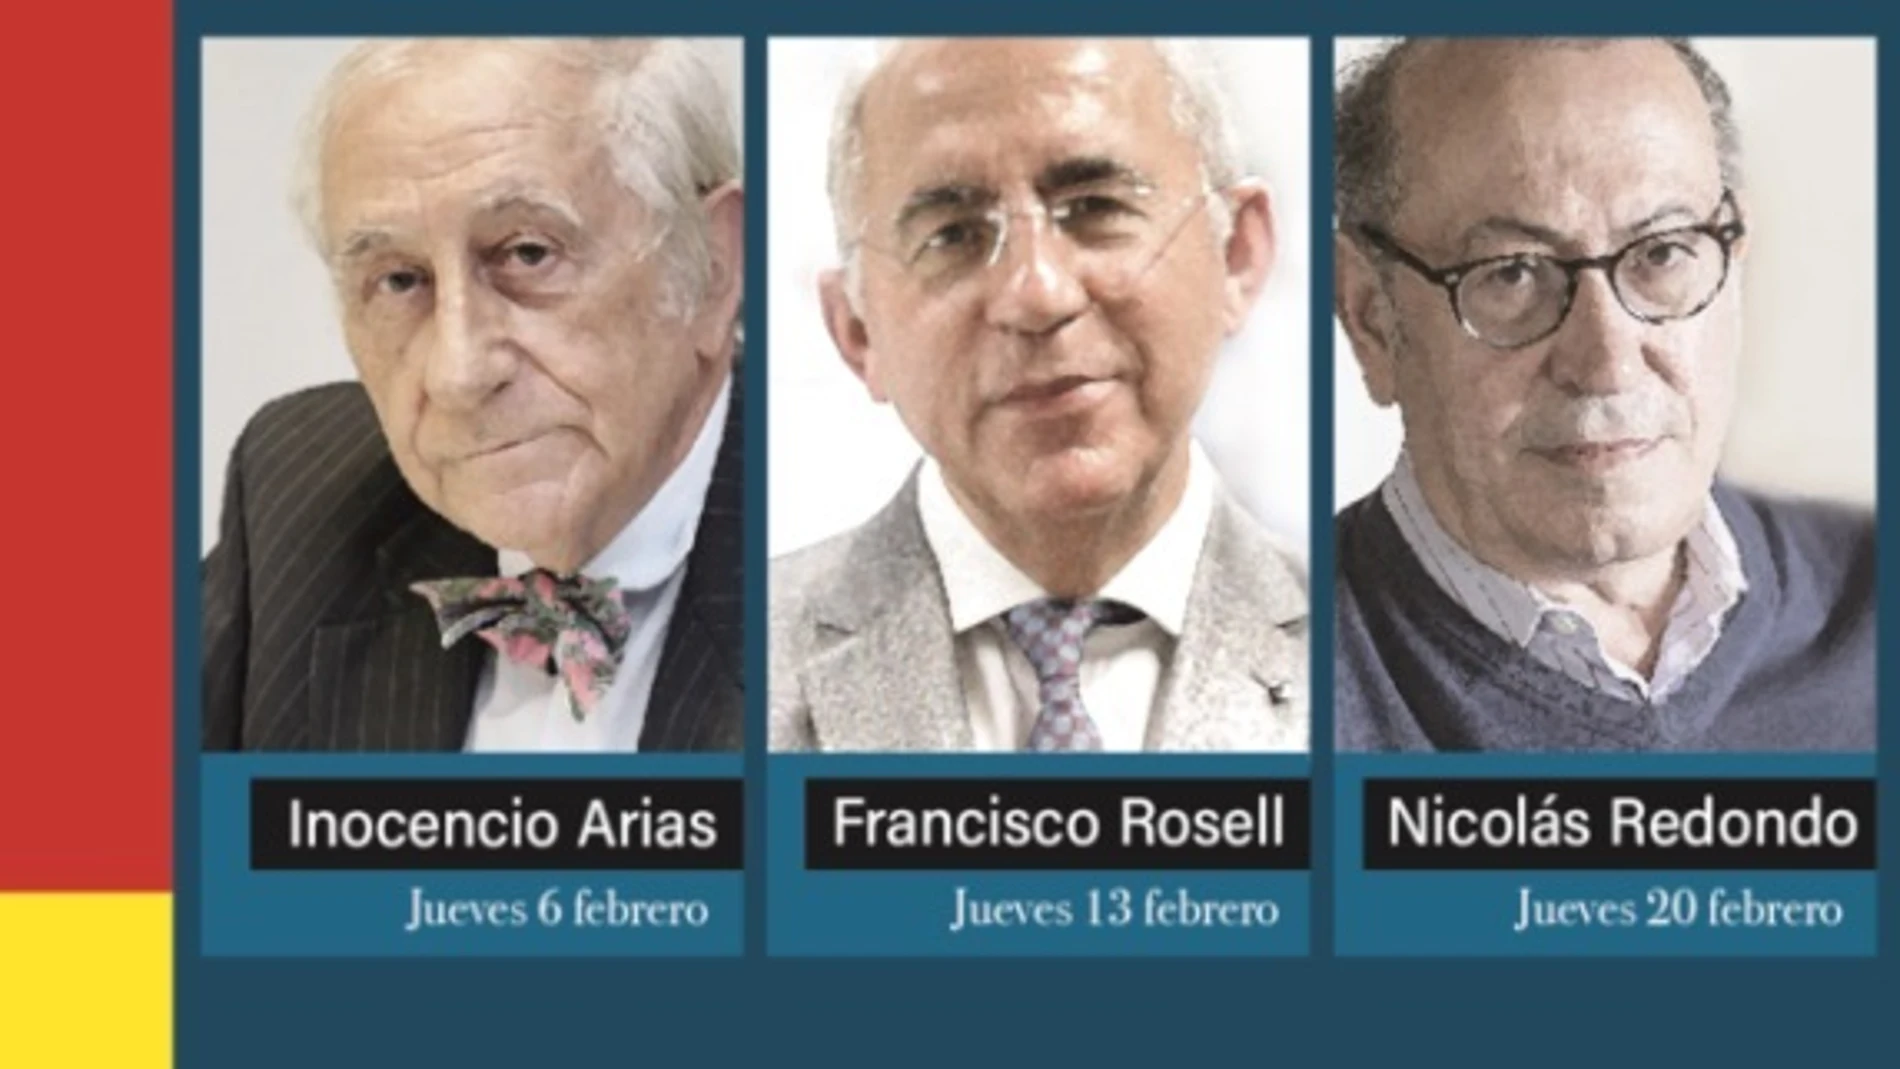 Sevilla.- Inocencio Arias, Francisco Rosell y Nicolás Redondo participan en Tomares en el VIII Foro España a Debate